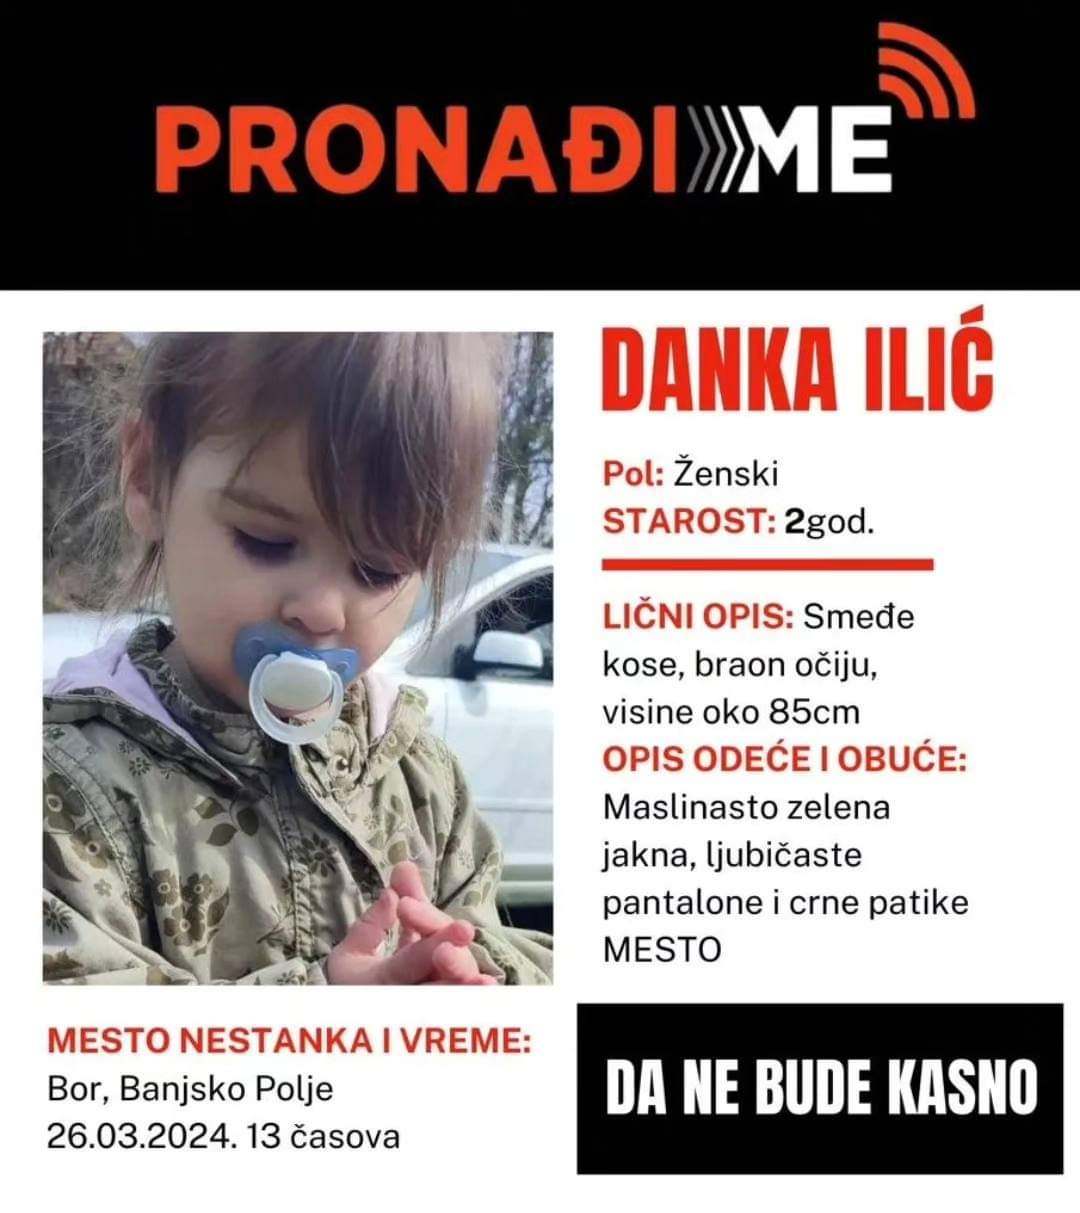 Sistem PRONAĐI ME (AMER ALERT) - Danka Ilić dvogodišnja devojčica